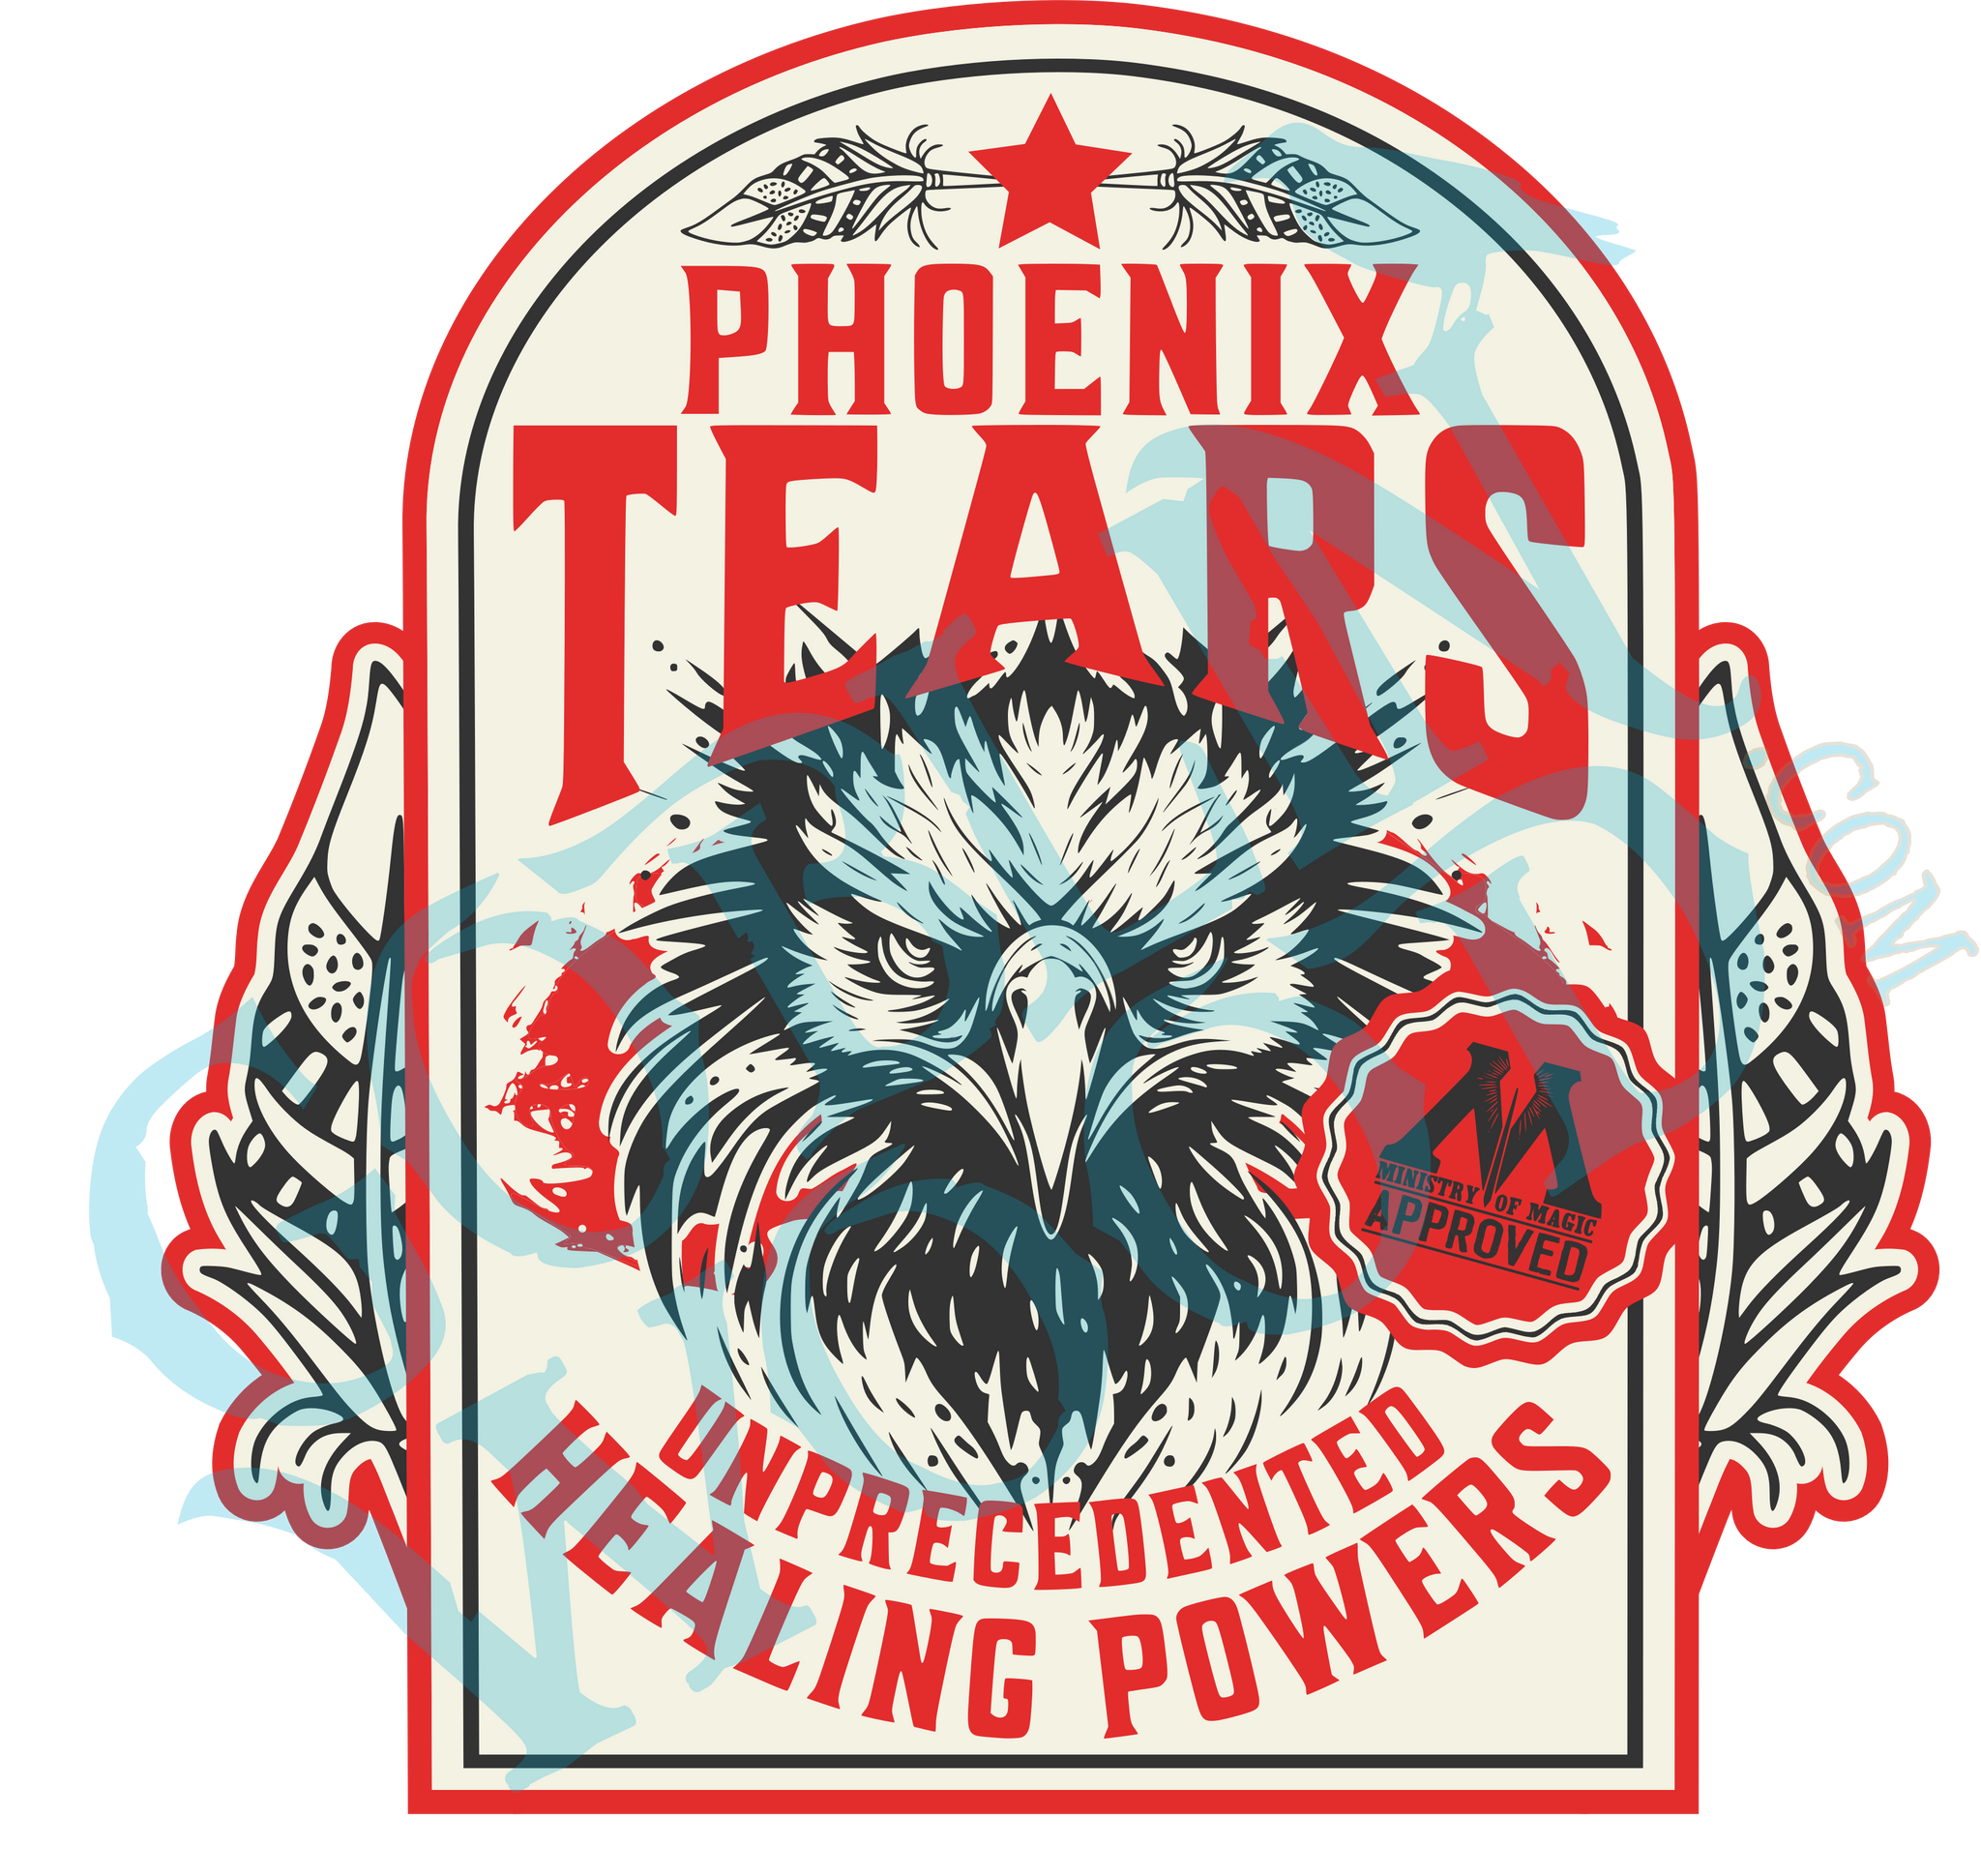 Phoenix Tears - Harry Potter Inspired